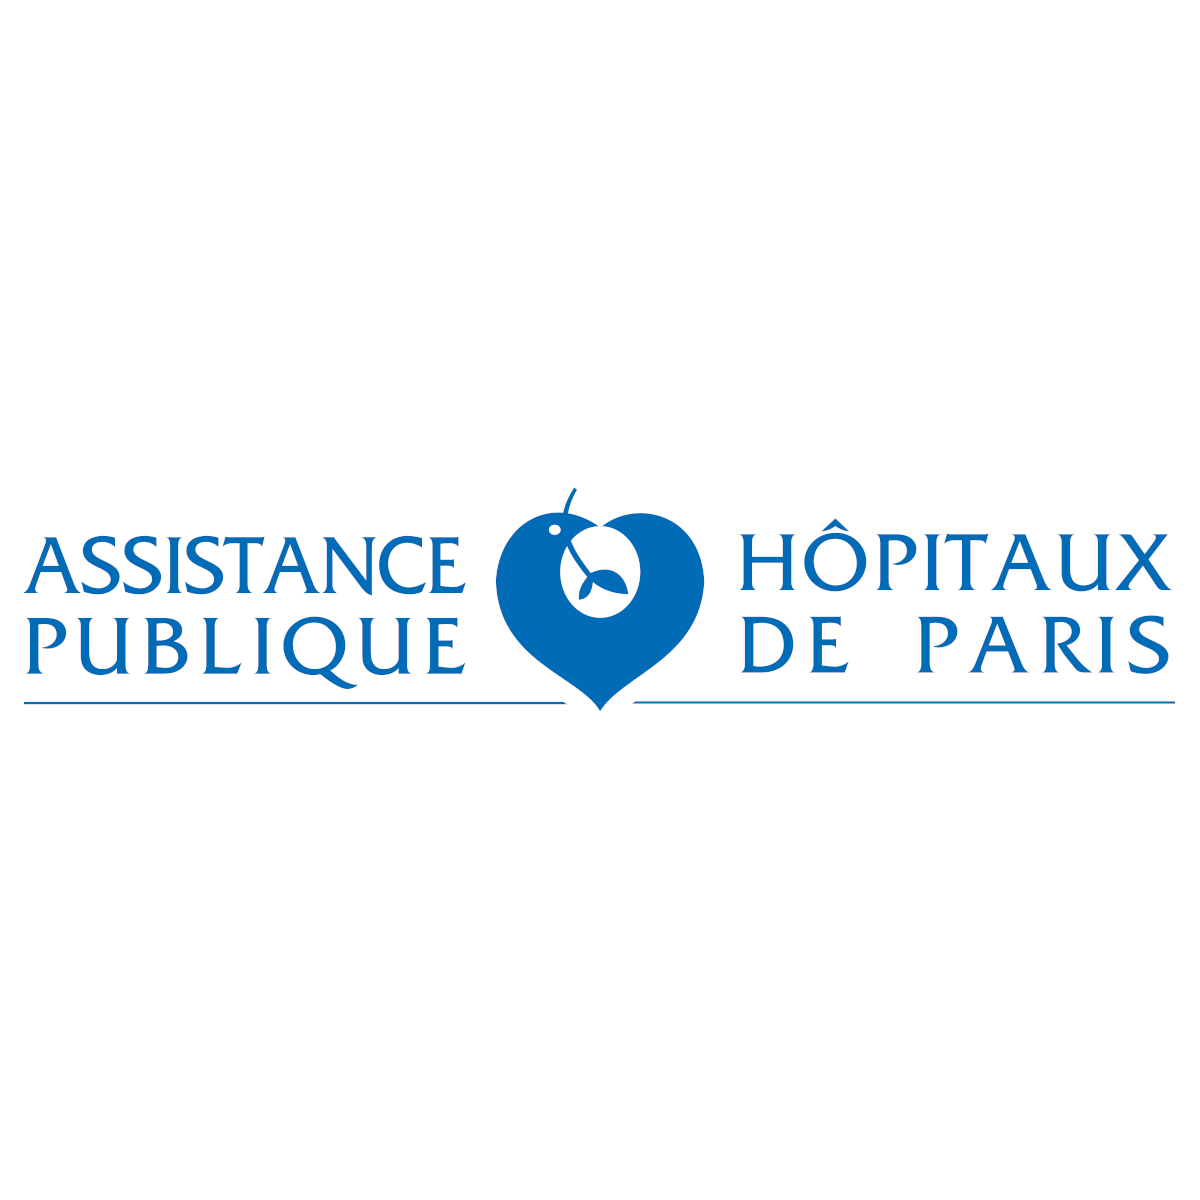 Assistance publique Hopitaux de paris